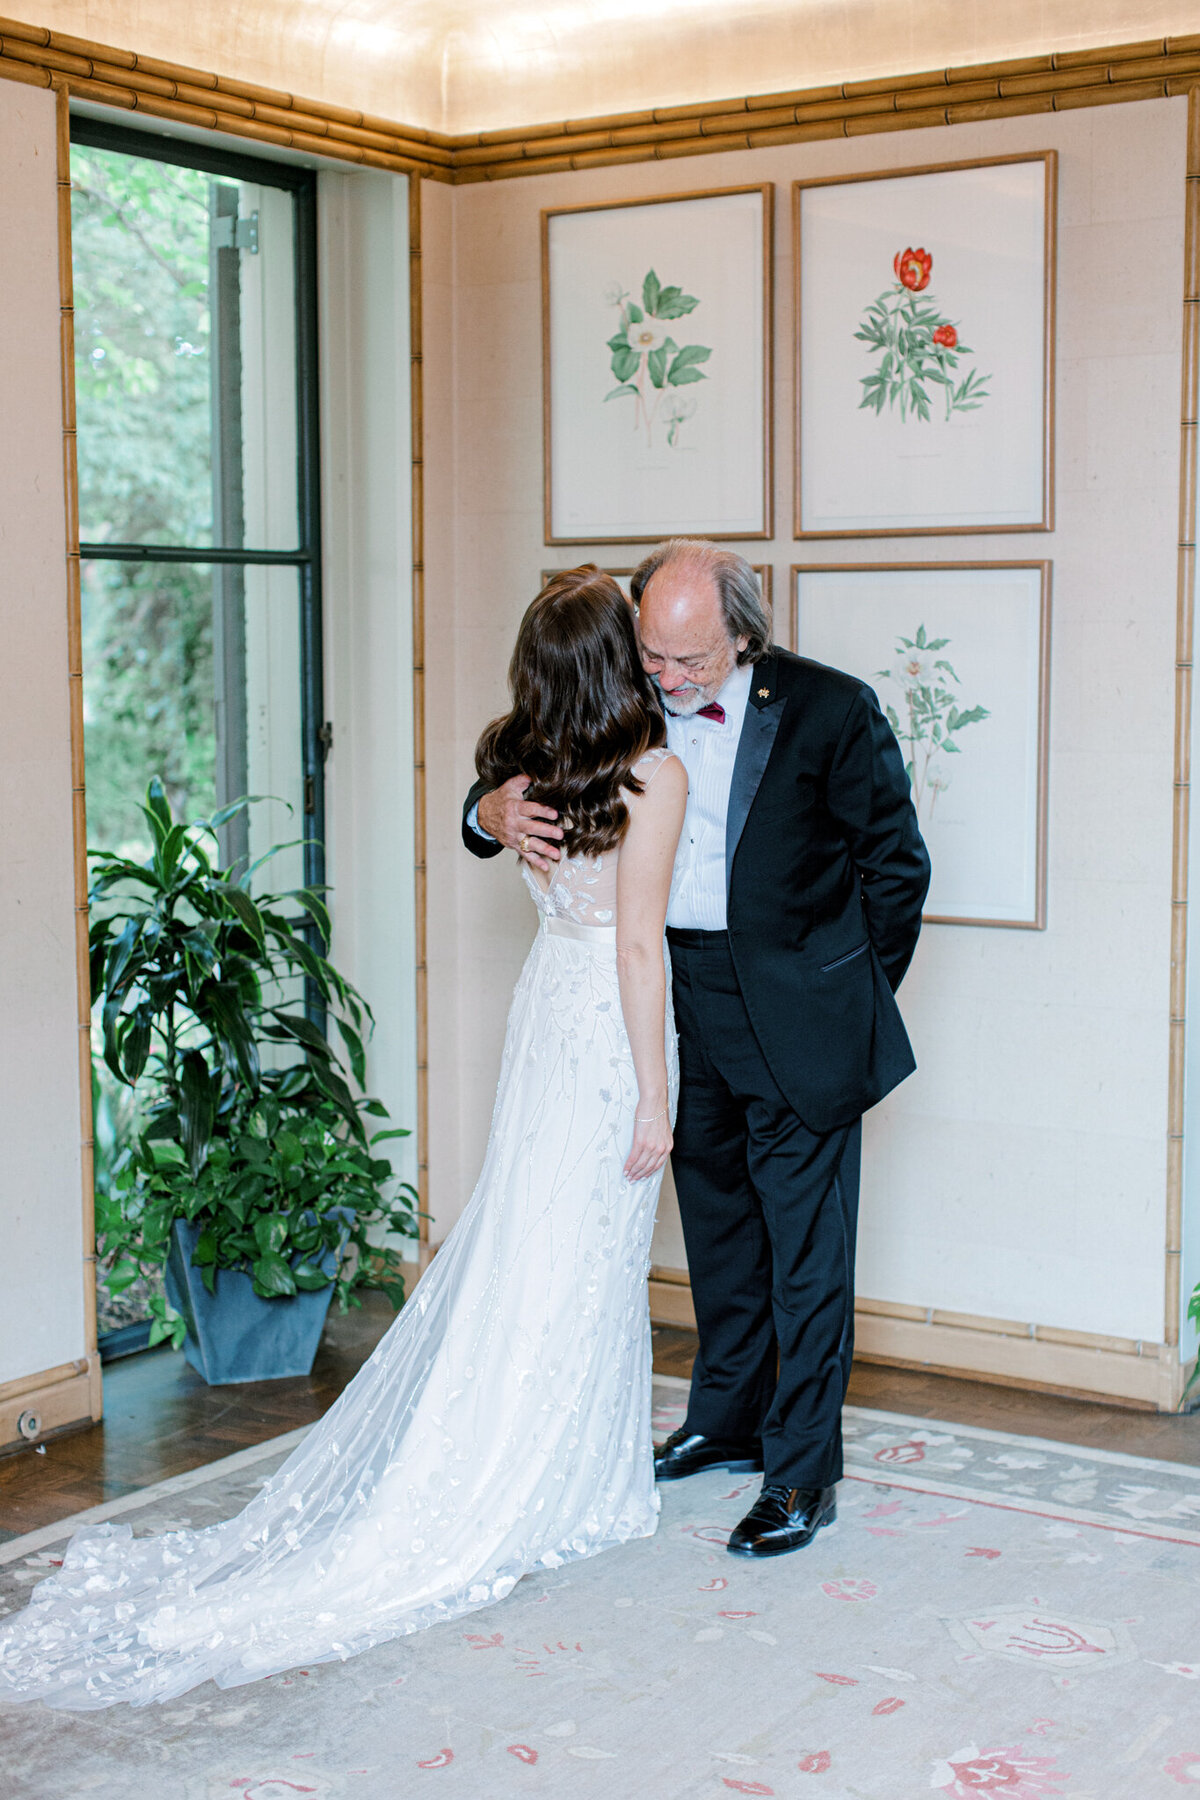 Gena & Matt's Wedding at the Dallas Arboretum | Dallas Wedding Photographer | Sami Kathryn Photography-59